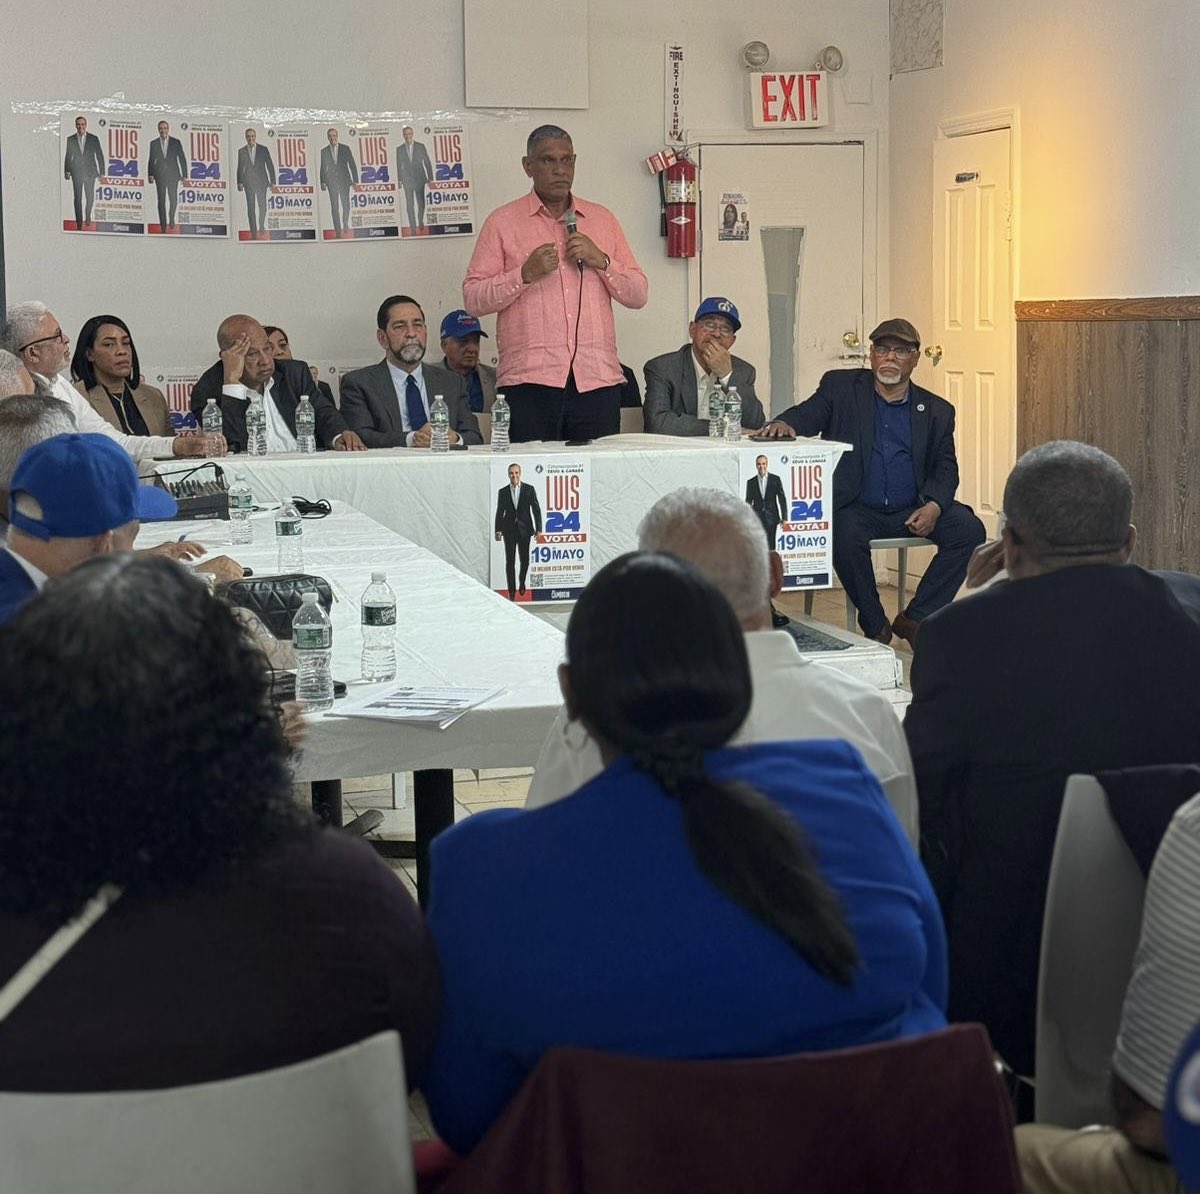 Los dominicanos del #Bronx y #Queens, en New York están listos y muy dispuestos a motivar y lograr que el voto de la diáspora sea masivo para @luisabinader y los candidatos del @prm_oficial. #SomosPRM